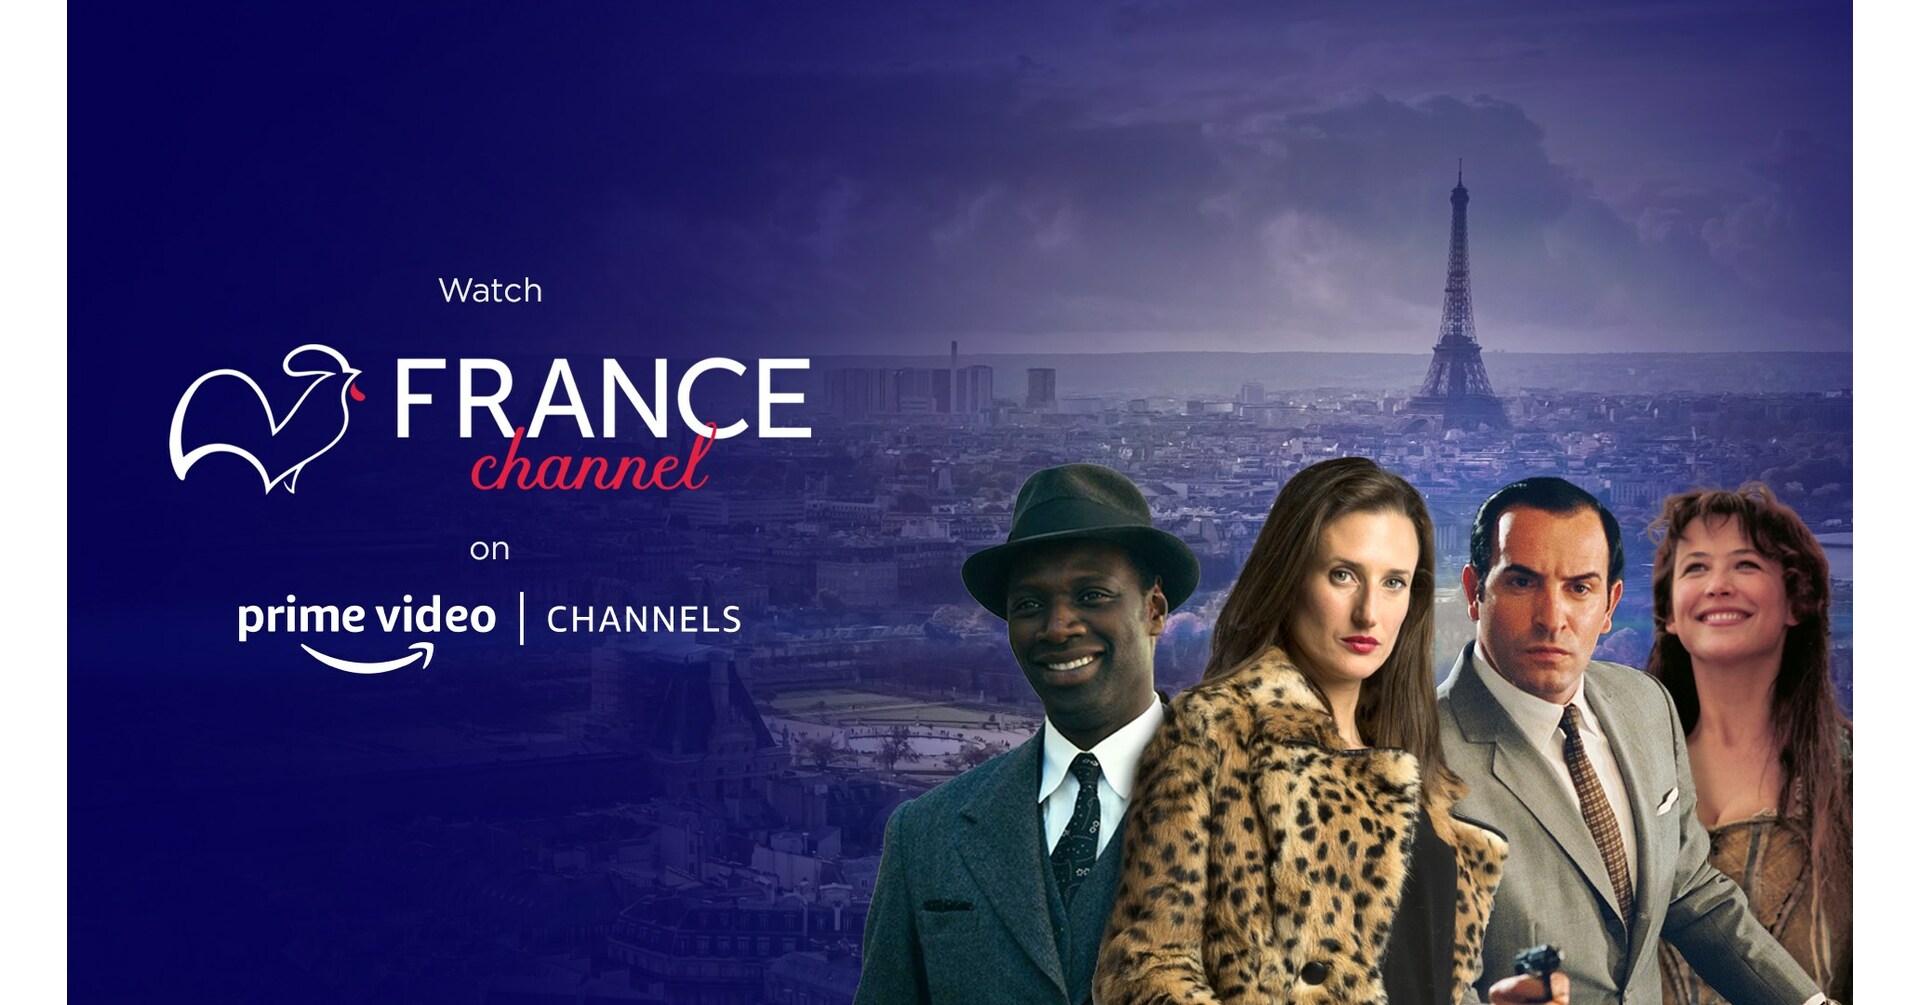 Canal France, le plus grand service de streaming célébrant la France, la culture et le divertissement français, fait ses débuts sur Amazon Prime Video